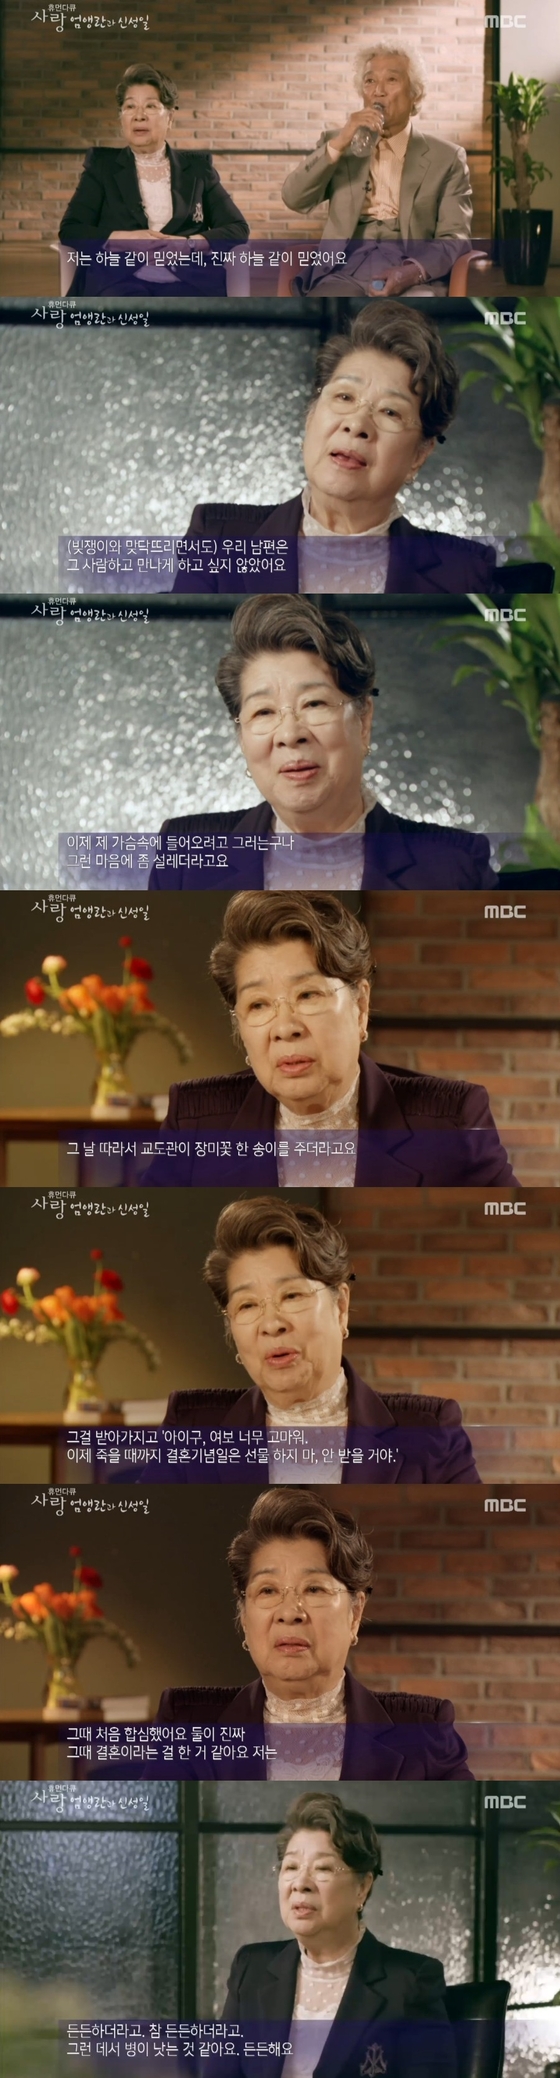 지난 2일 밤 11시10분 MBC '휴먼다큐 사랑'이 방송됐다. ⓒ News1star / MBC '휴먼다큐 사랑' 캡처